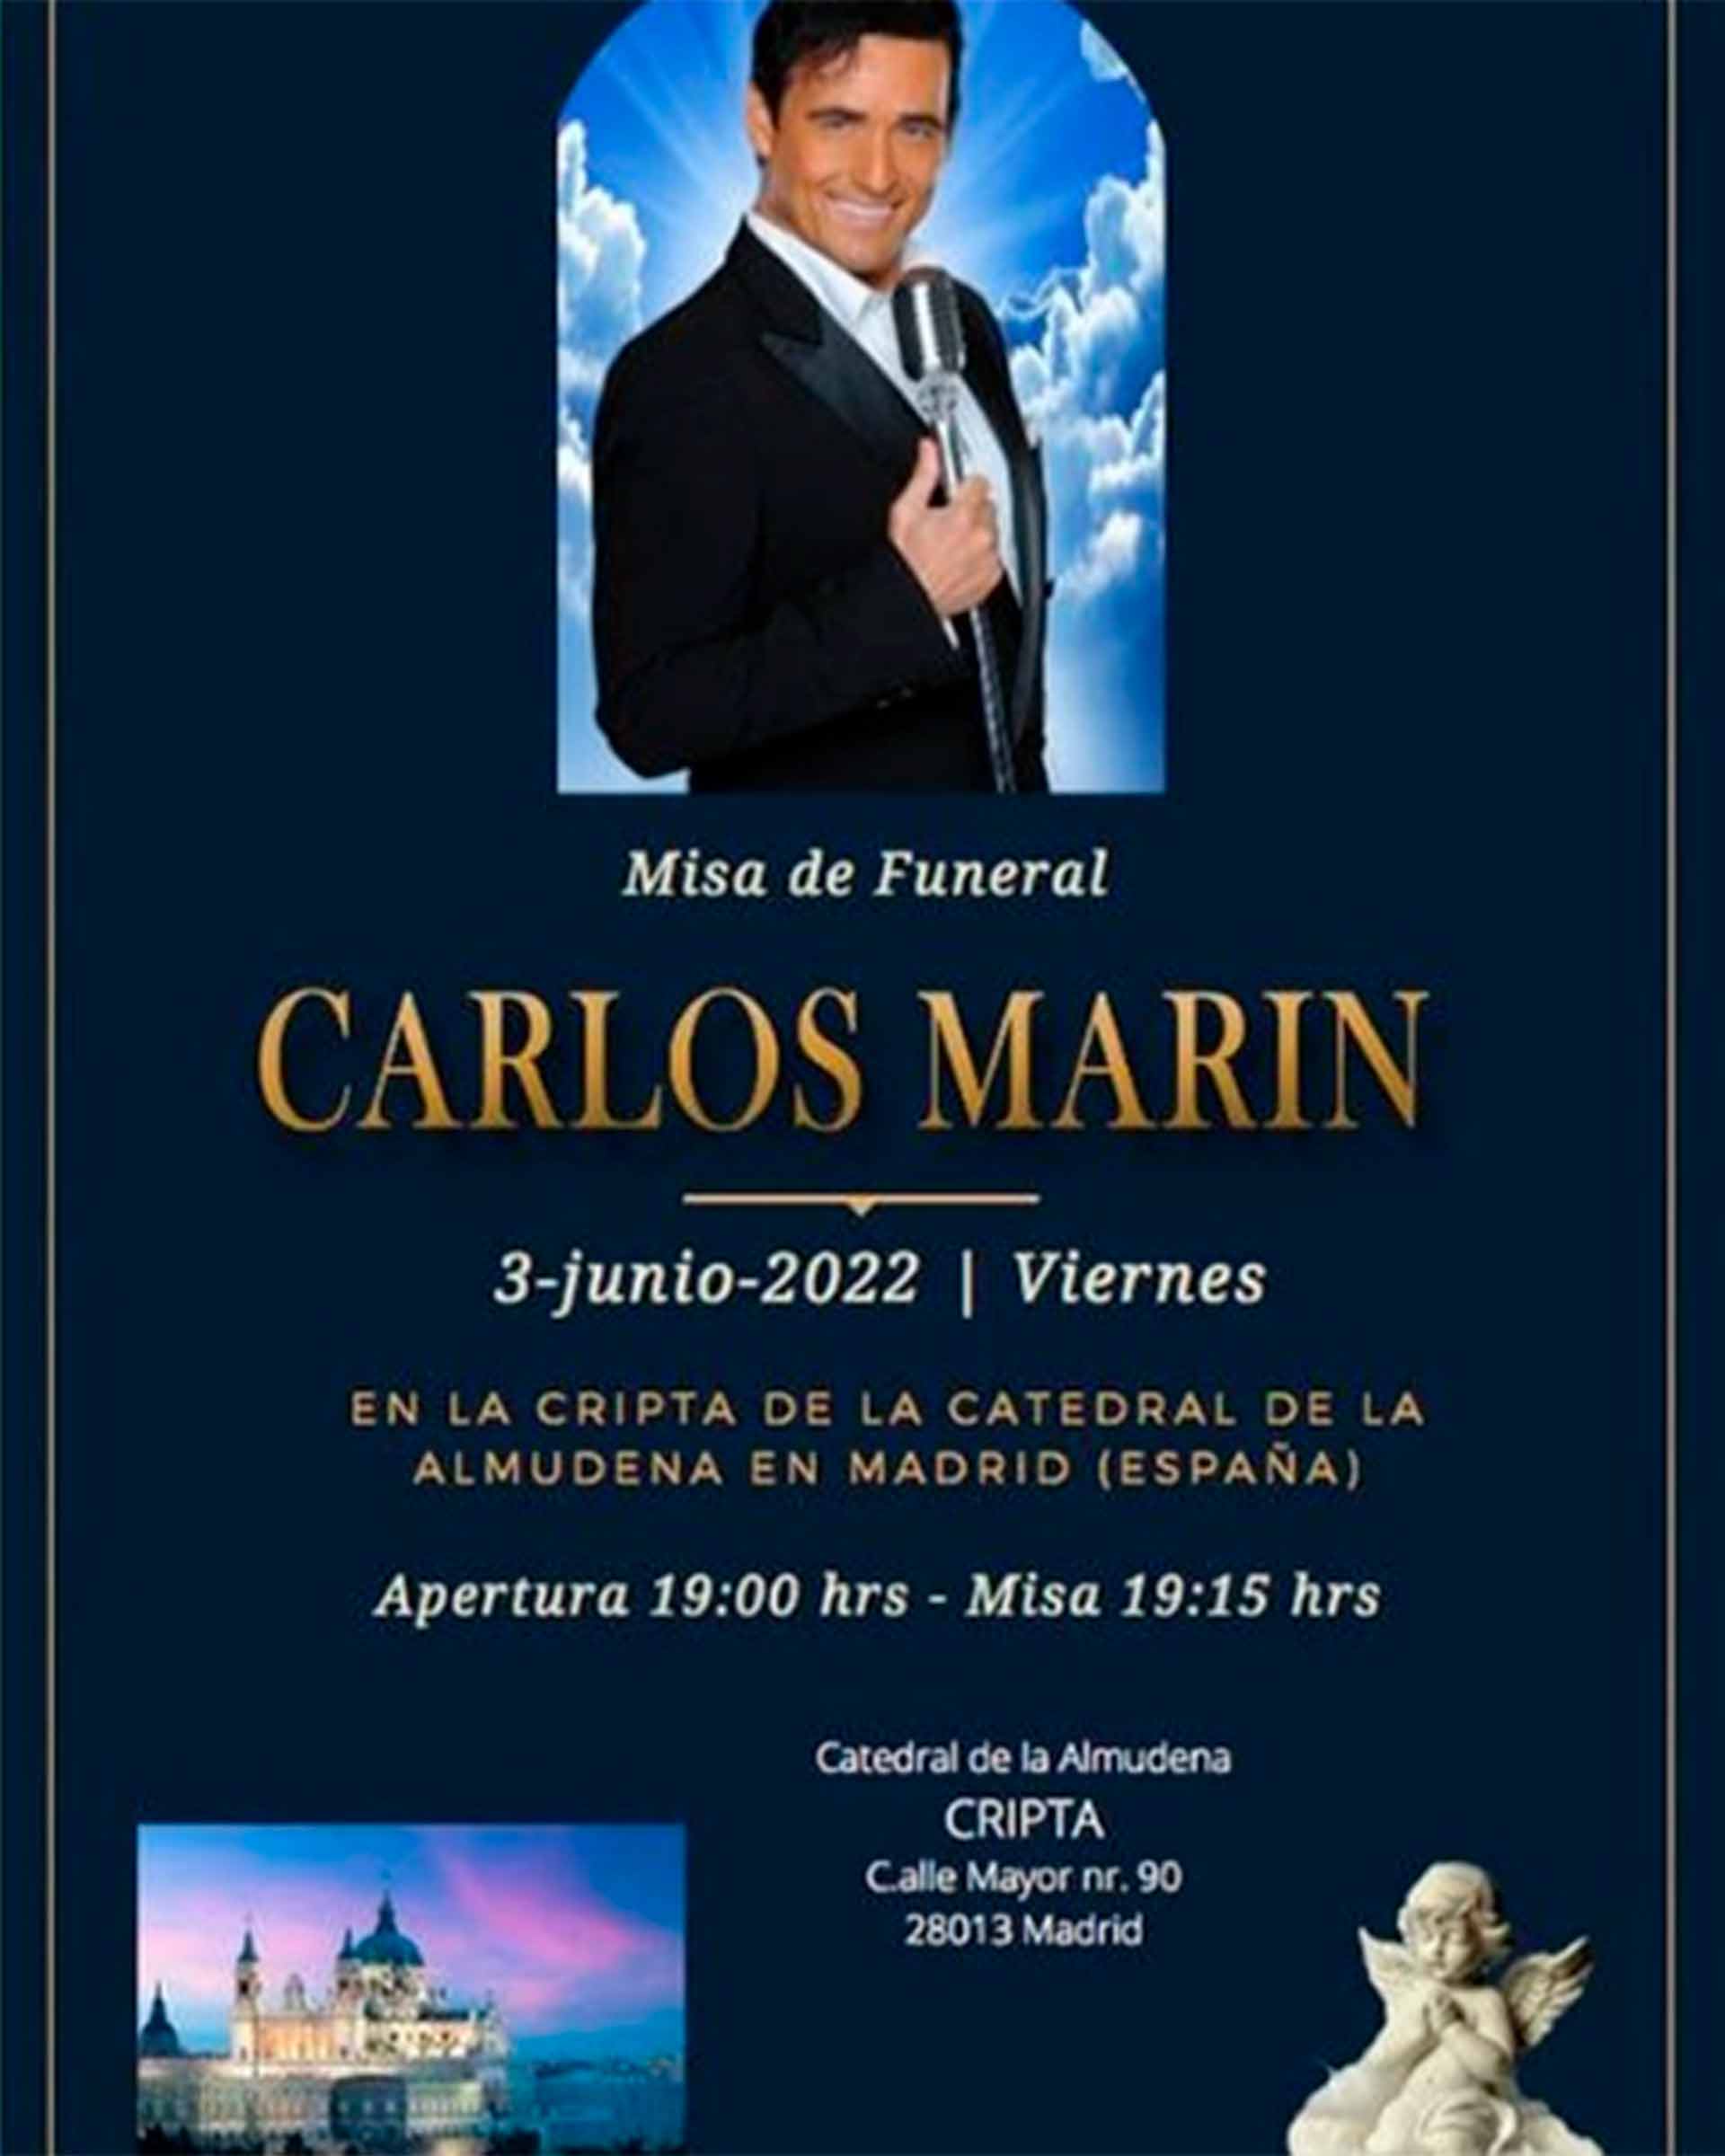 Carlos-Darin-misa-funeral